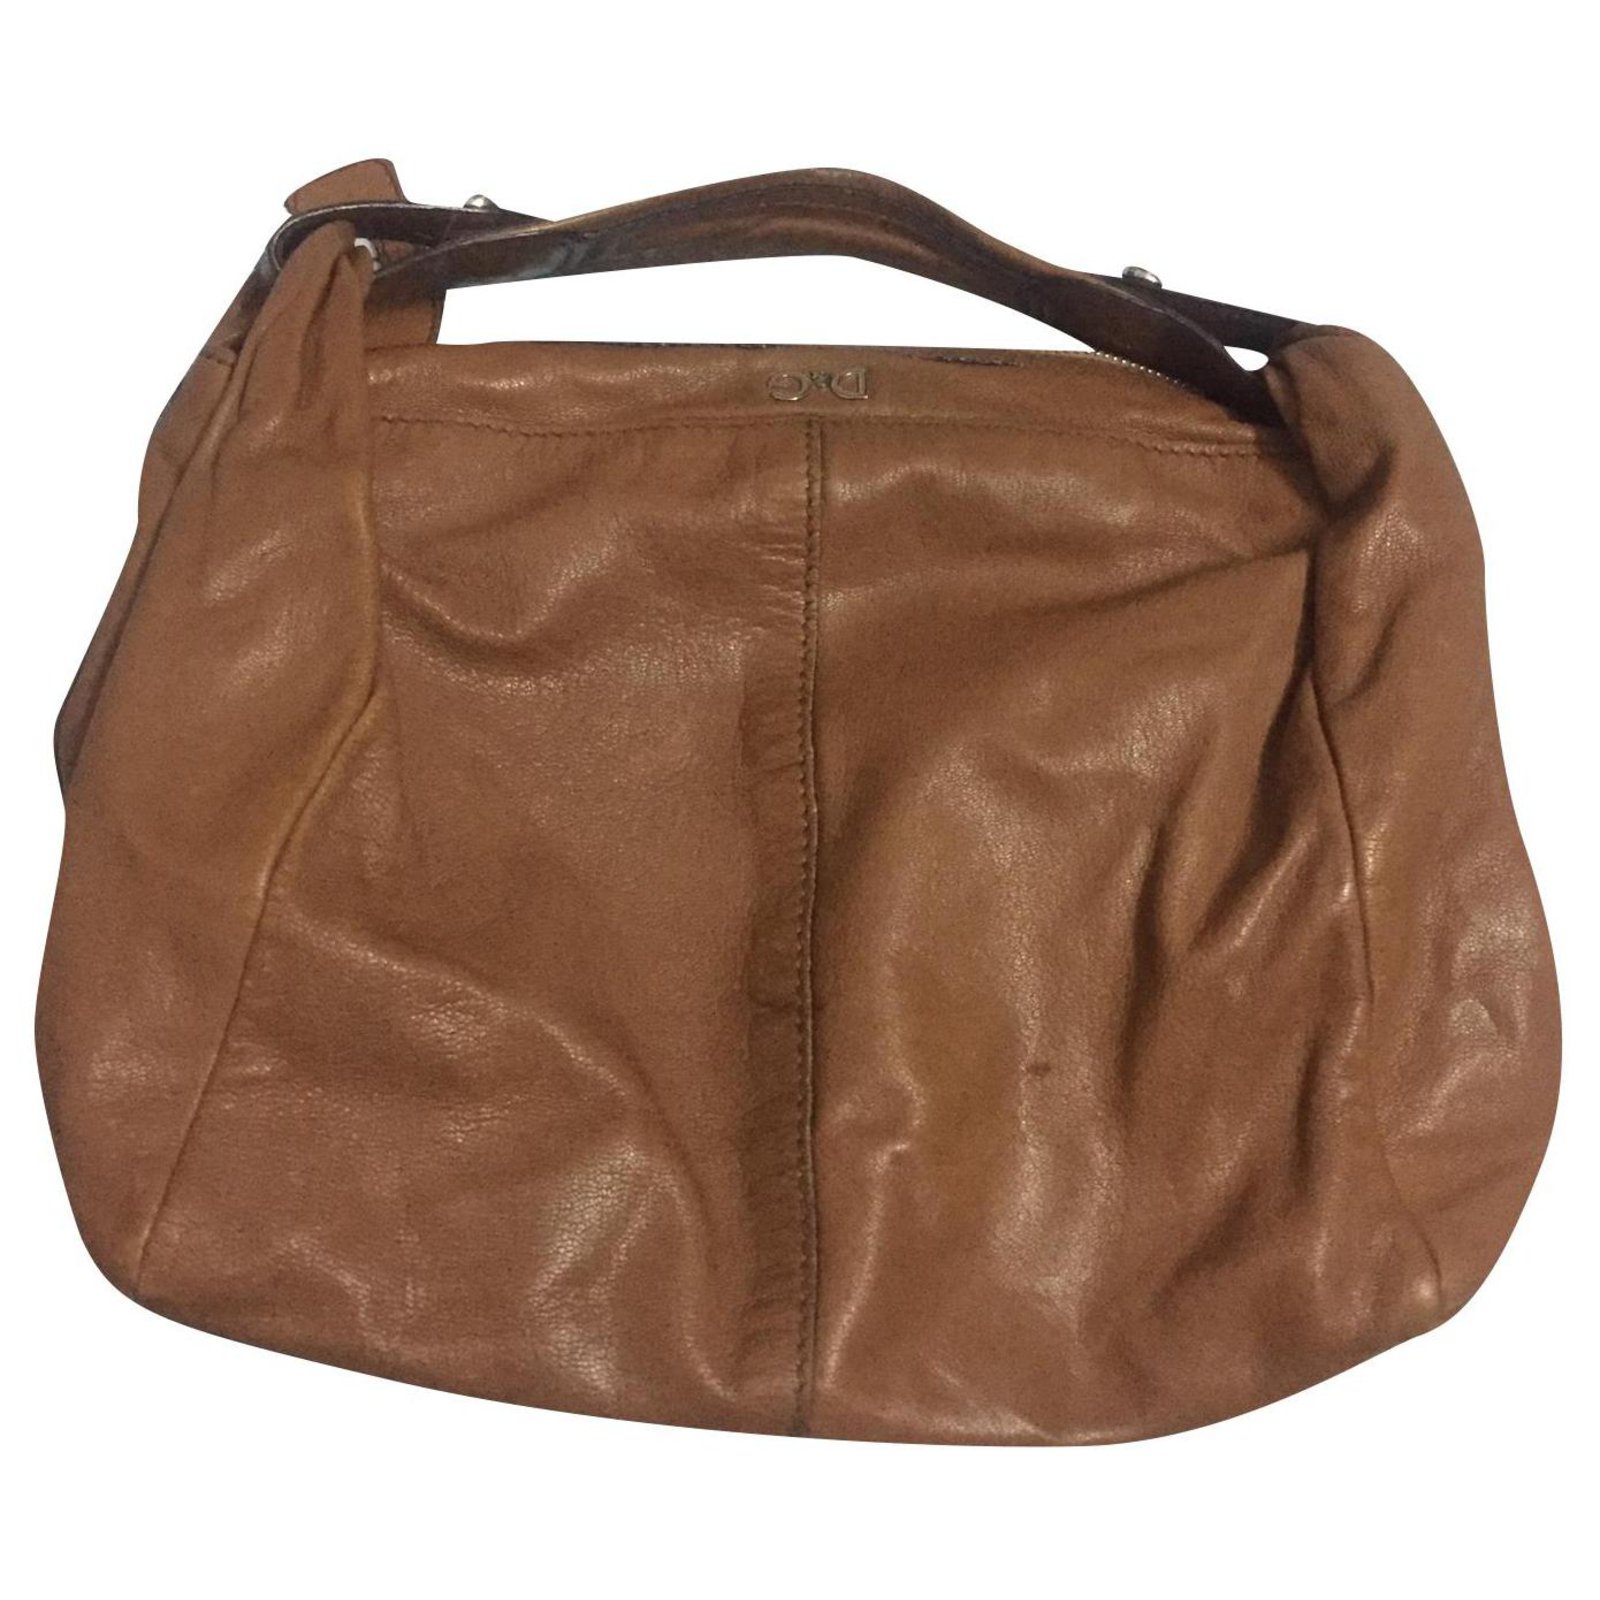 dolce gabbana leather bag